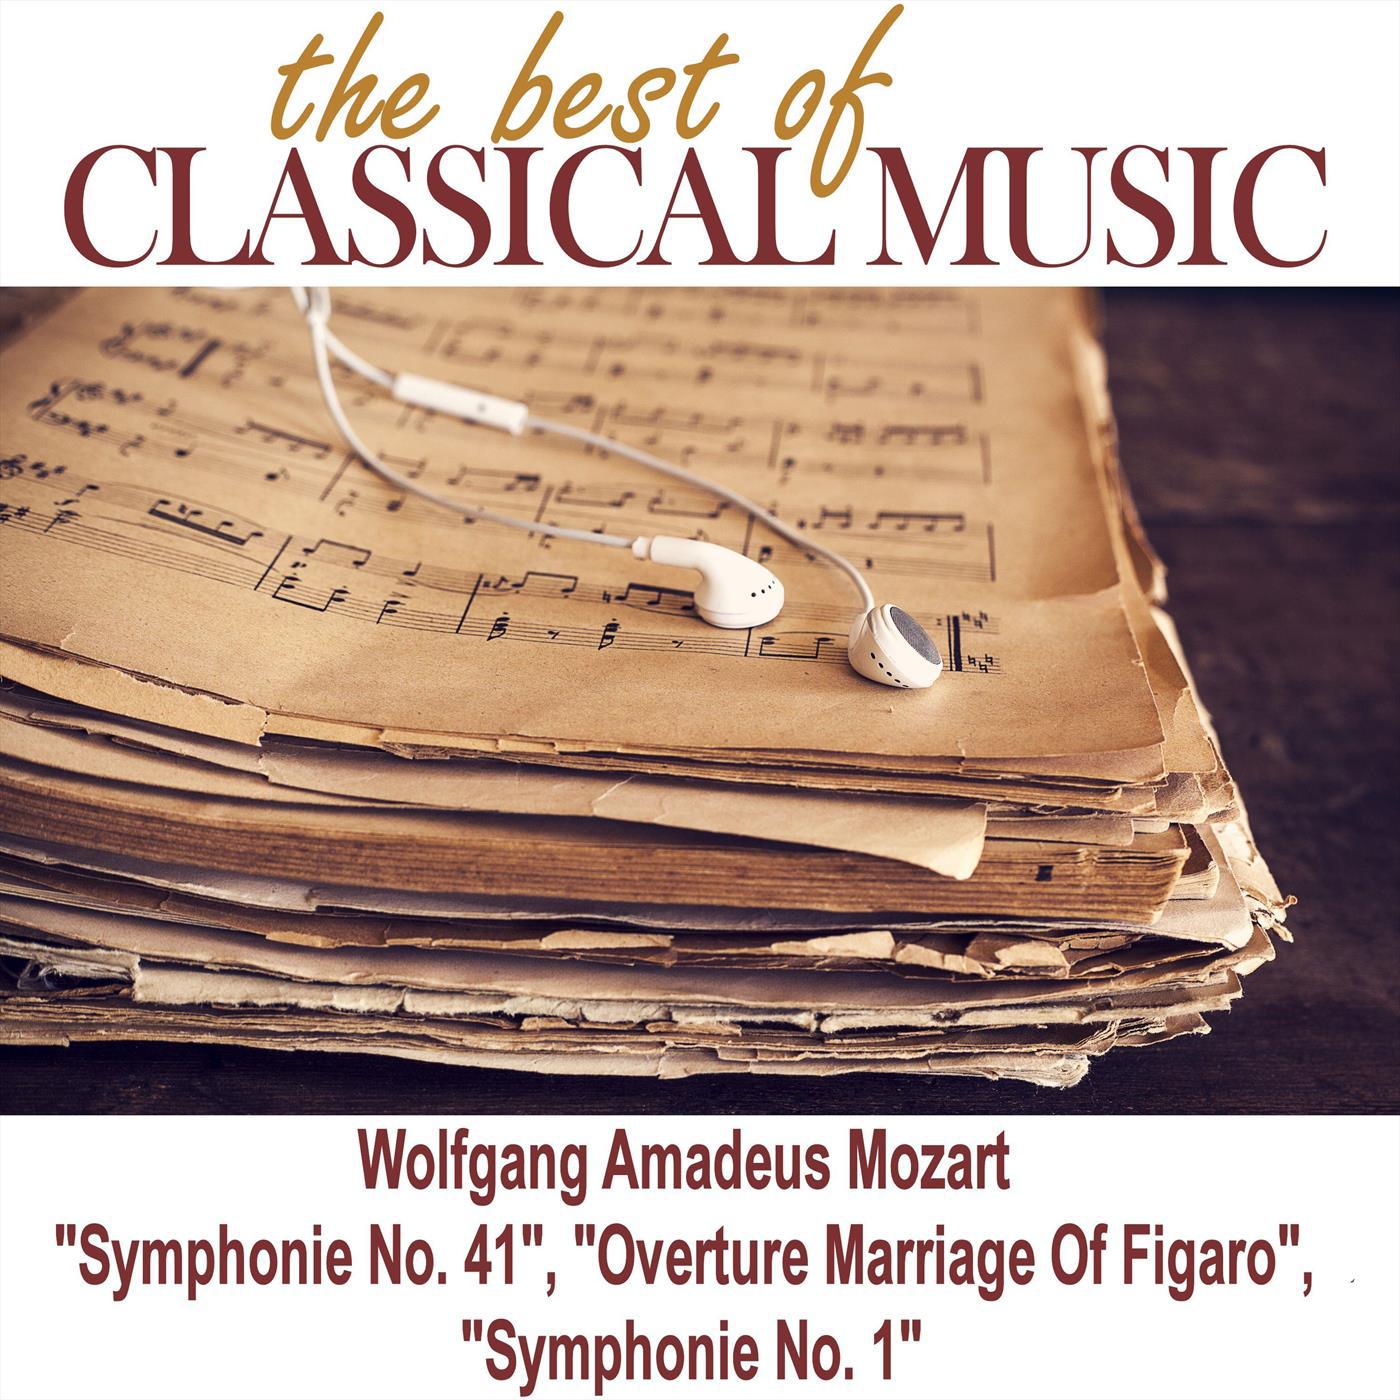 Symphony no.41 in C major, K 551 "Jupiter" - Andante cantabile (Mozart)